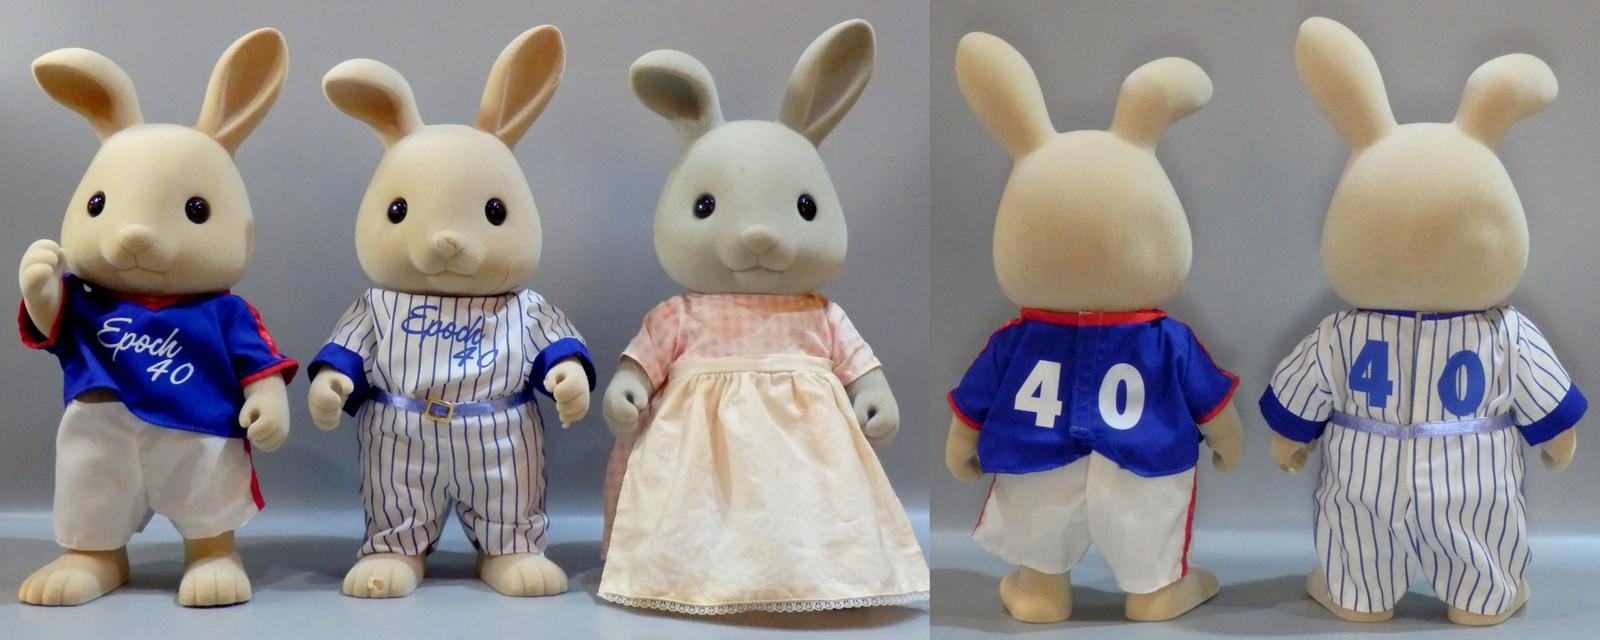 シルバニアファミリー・エポック社創立40周年記念大きなウサギの男の子 